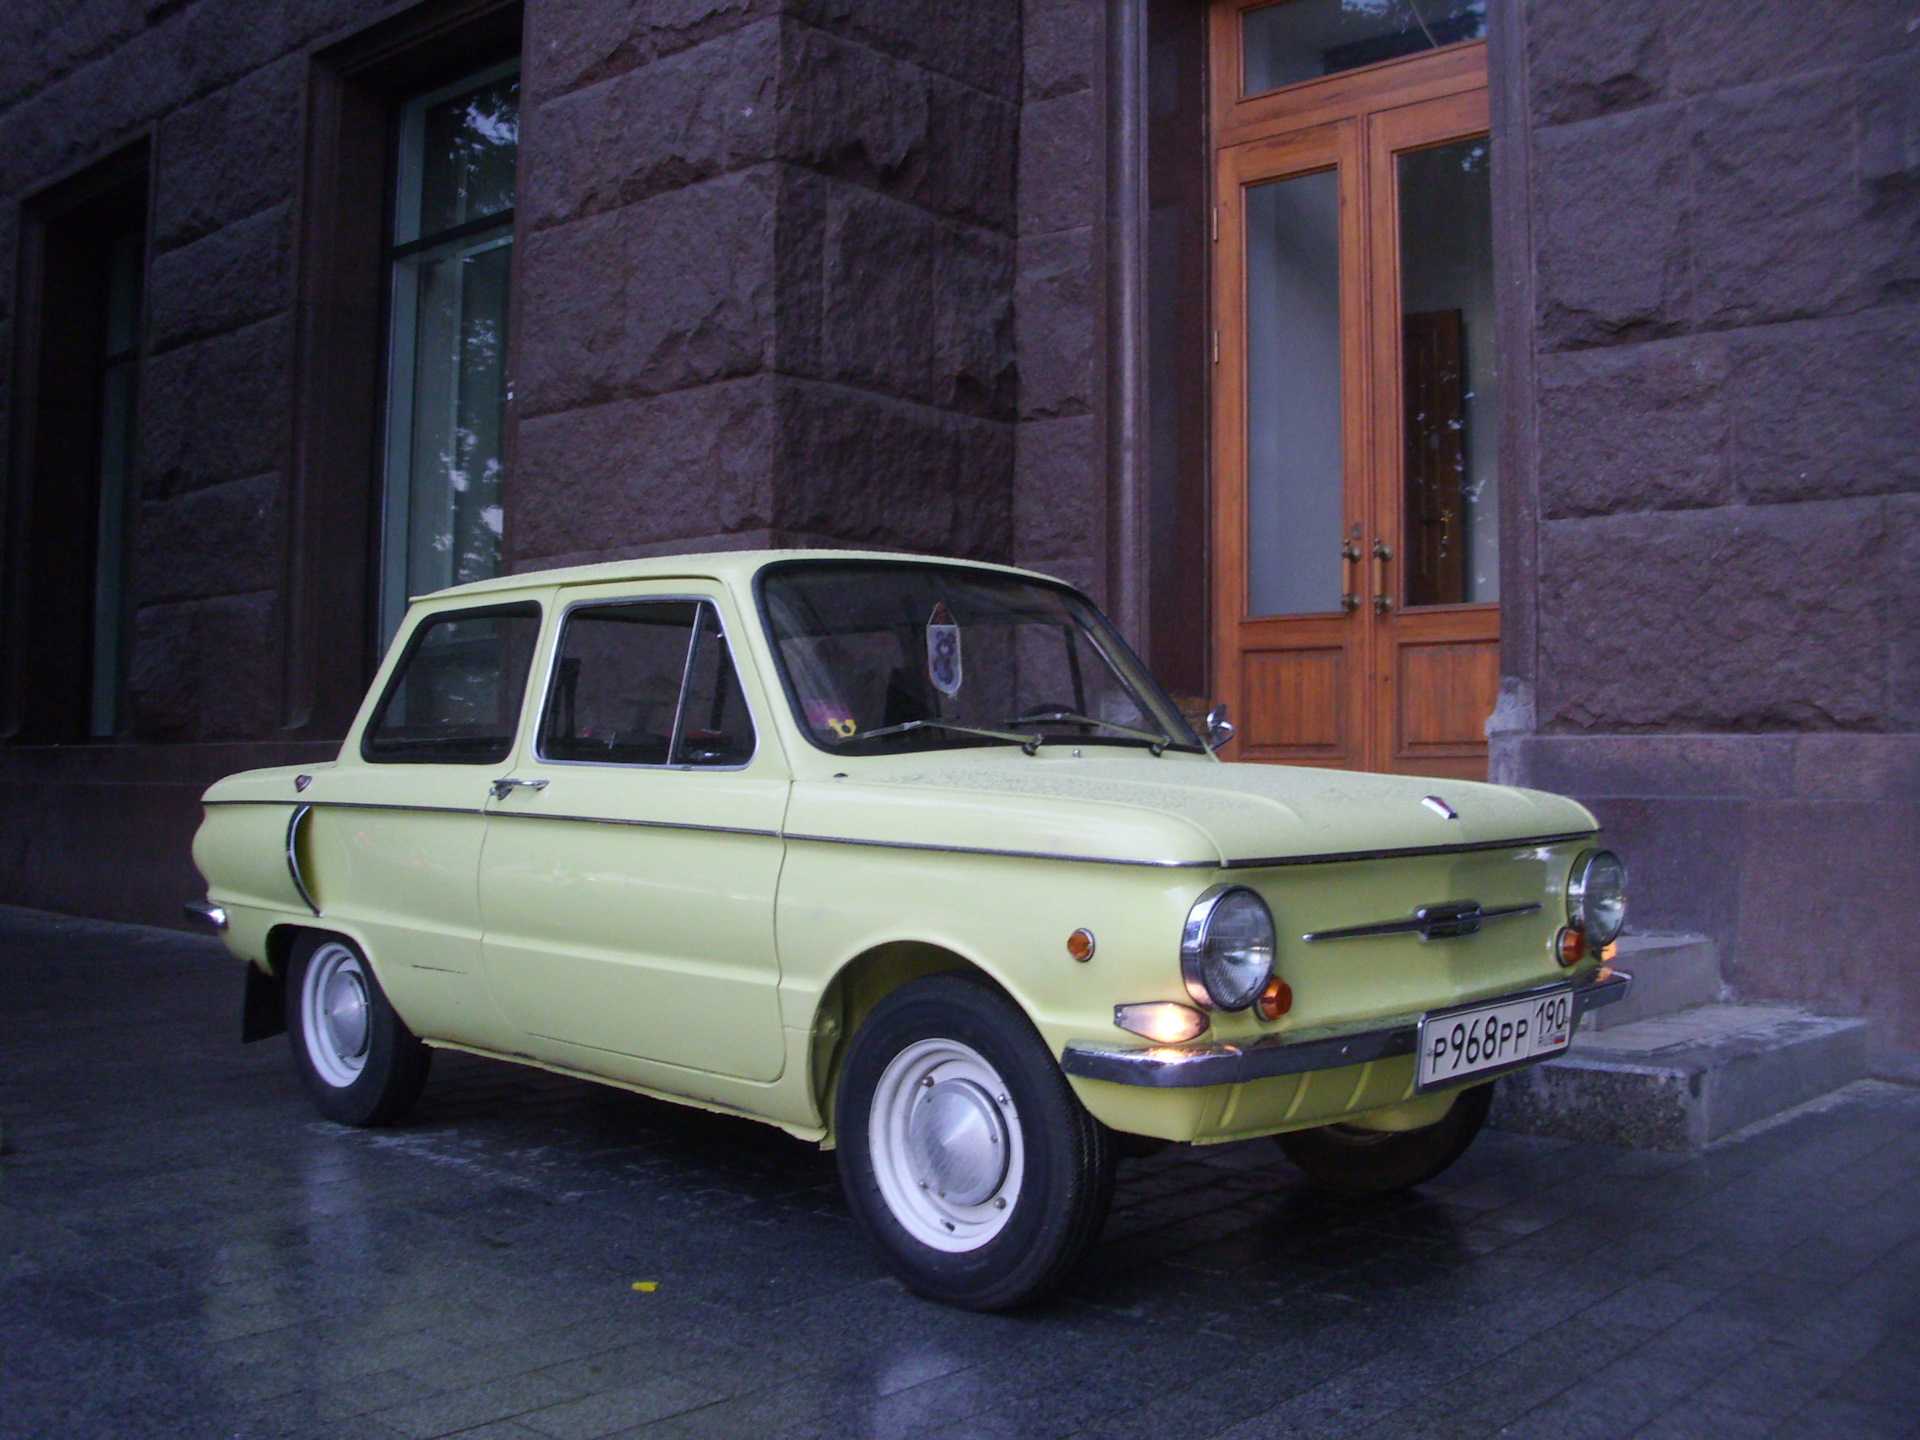 Запорожец "ушастый" заз-966 - история автомобиля.